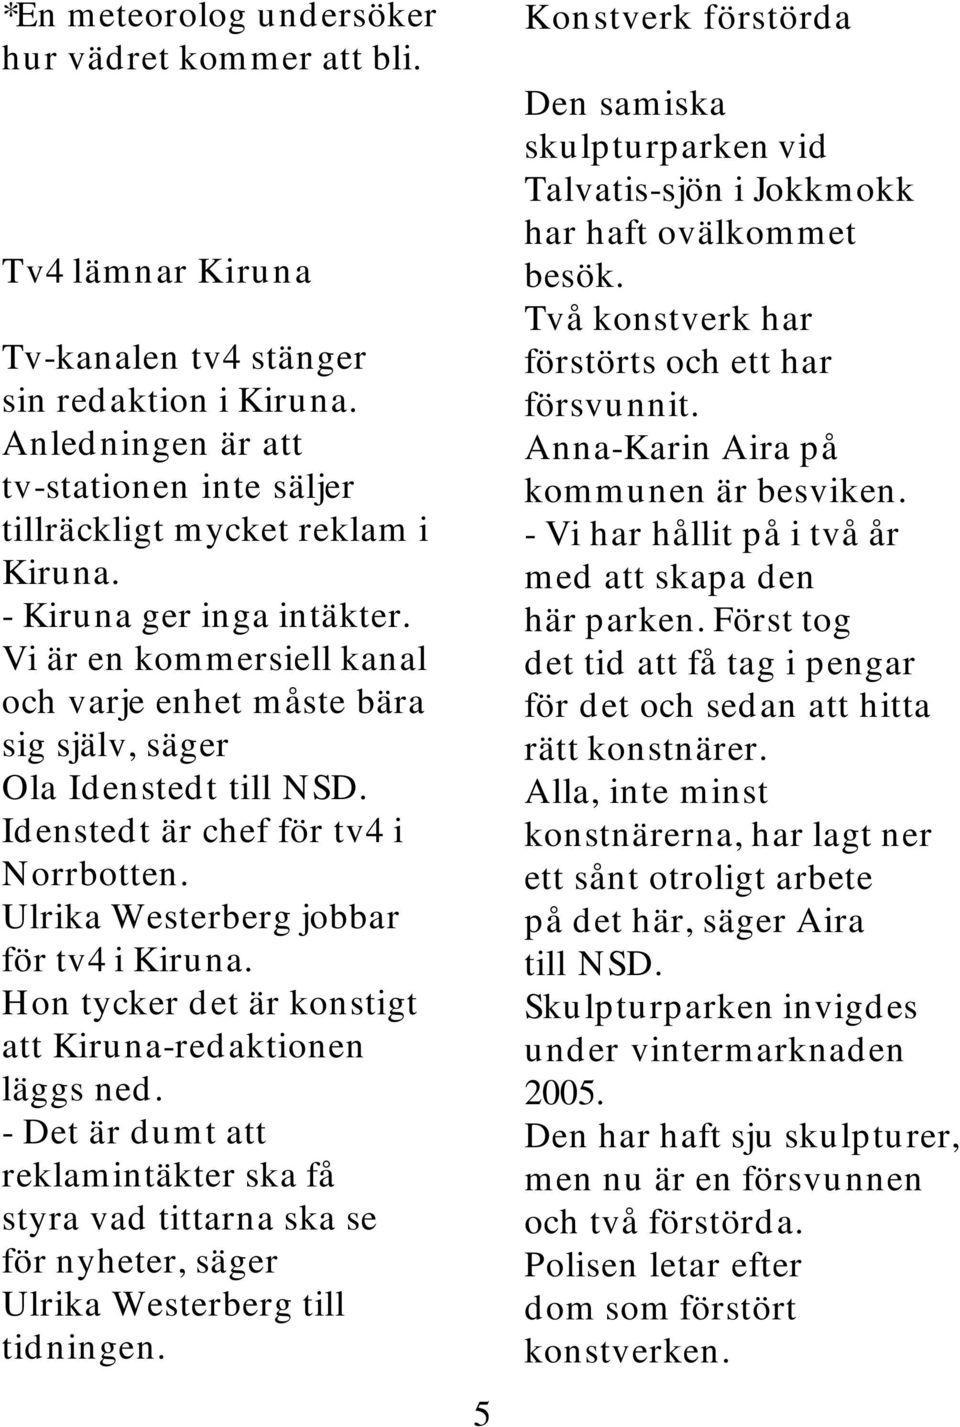 Ulrika Westerberg jobbar för tv4 i Kiruna. Hon tycker det är konstigt att Kiruna-redaktionen läggs ned.